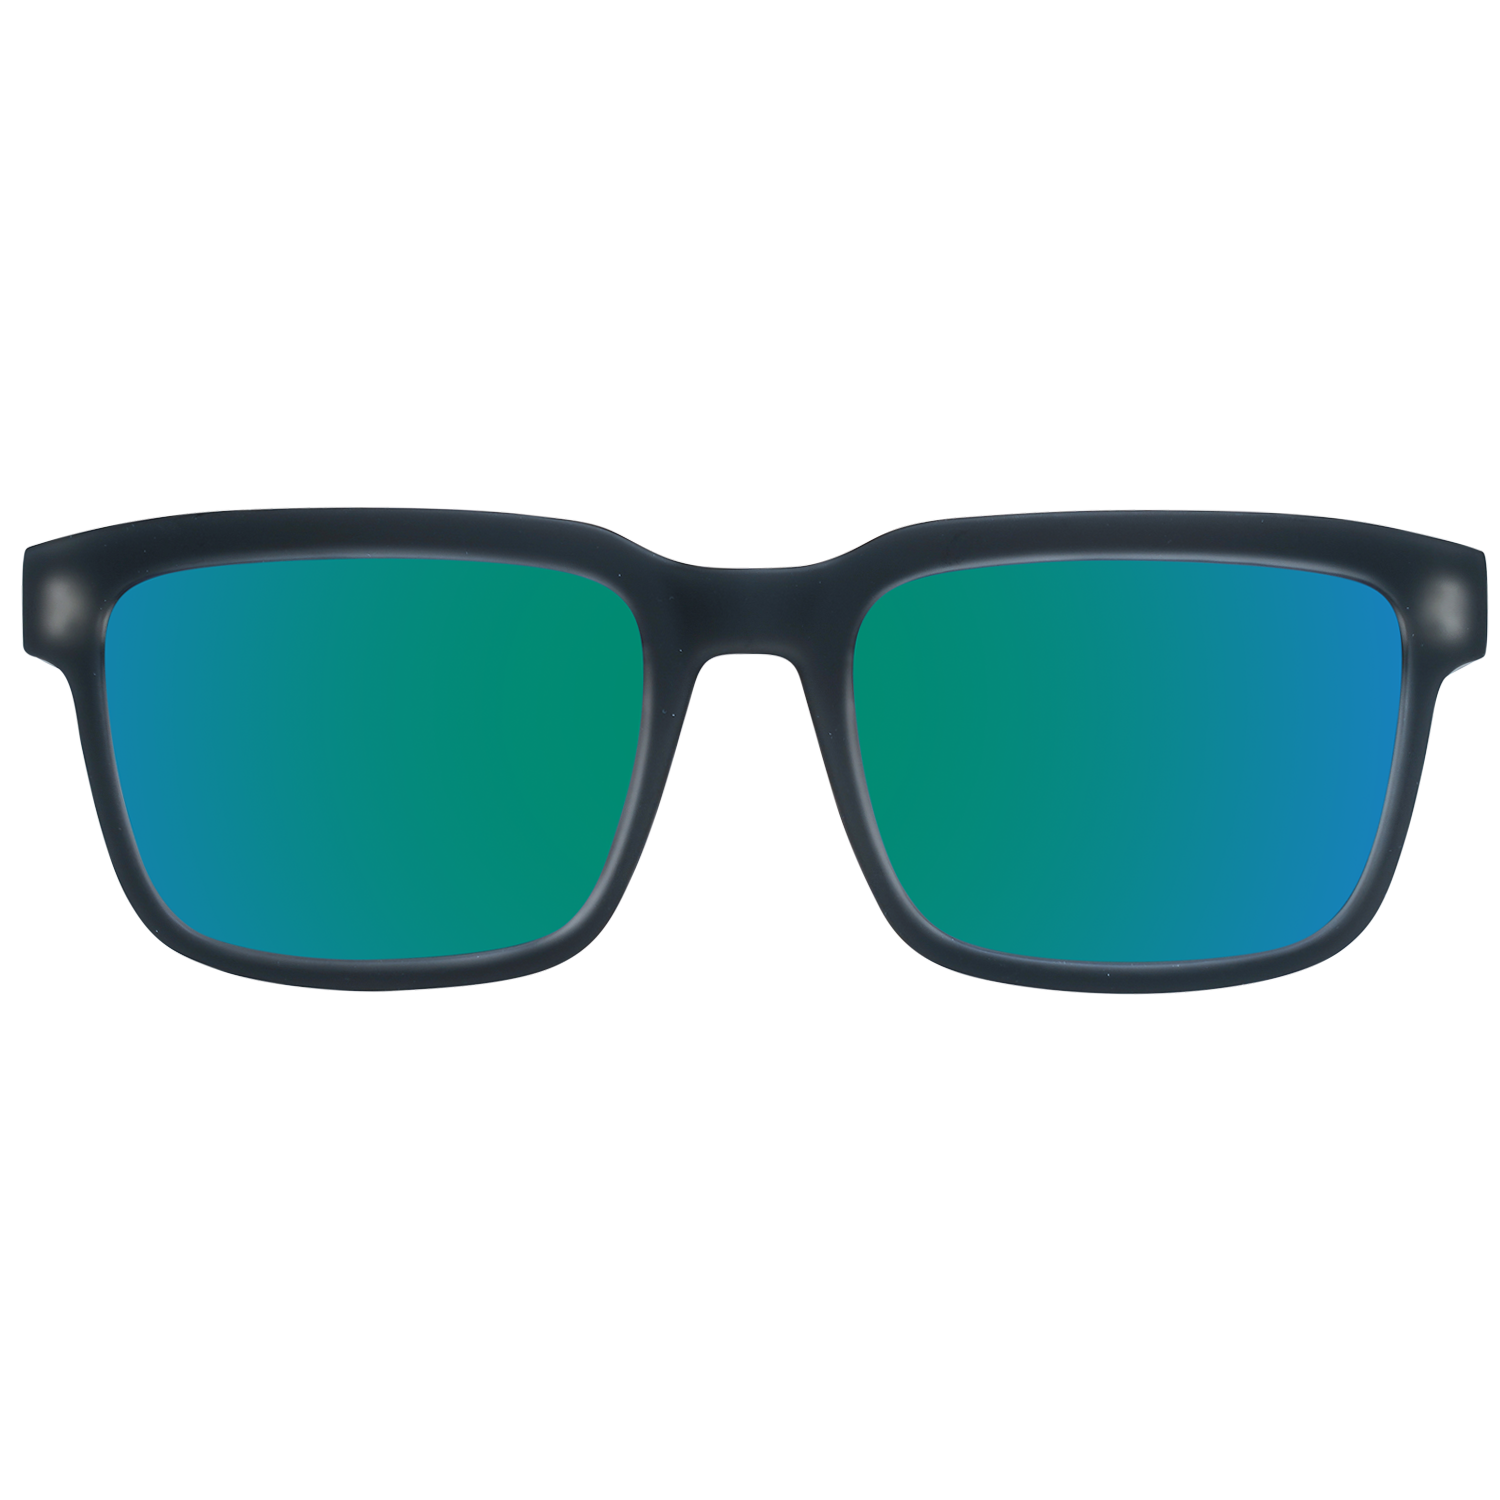 Spy Sunglasses Spy Sunglasses 673520102356 Helm 2 57 Eyeglasses Eyewear UK USA Australia 